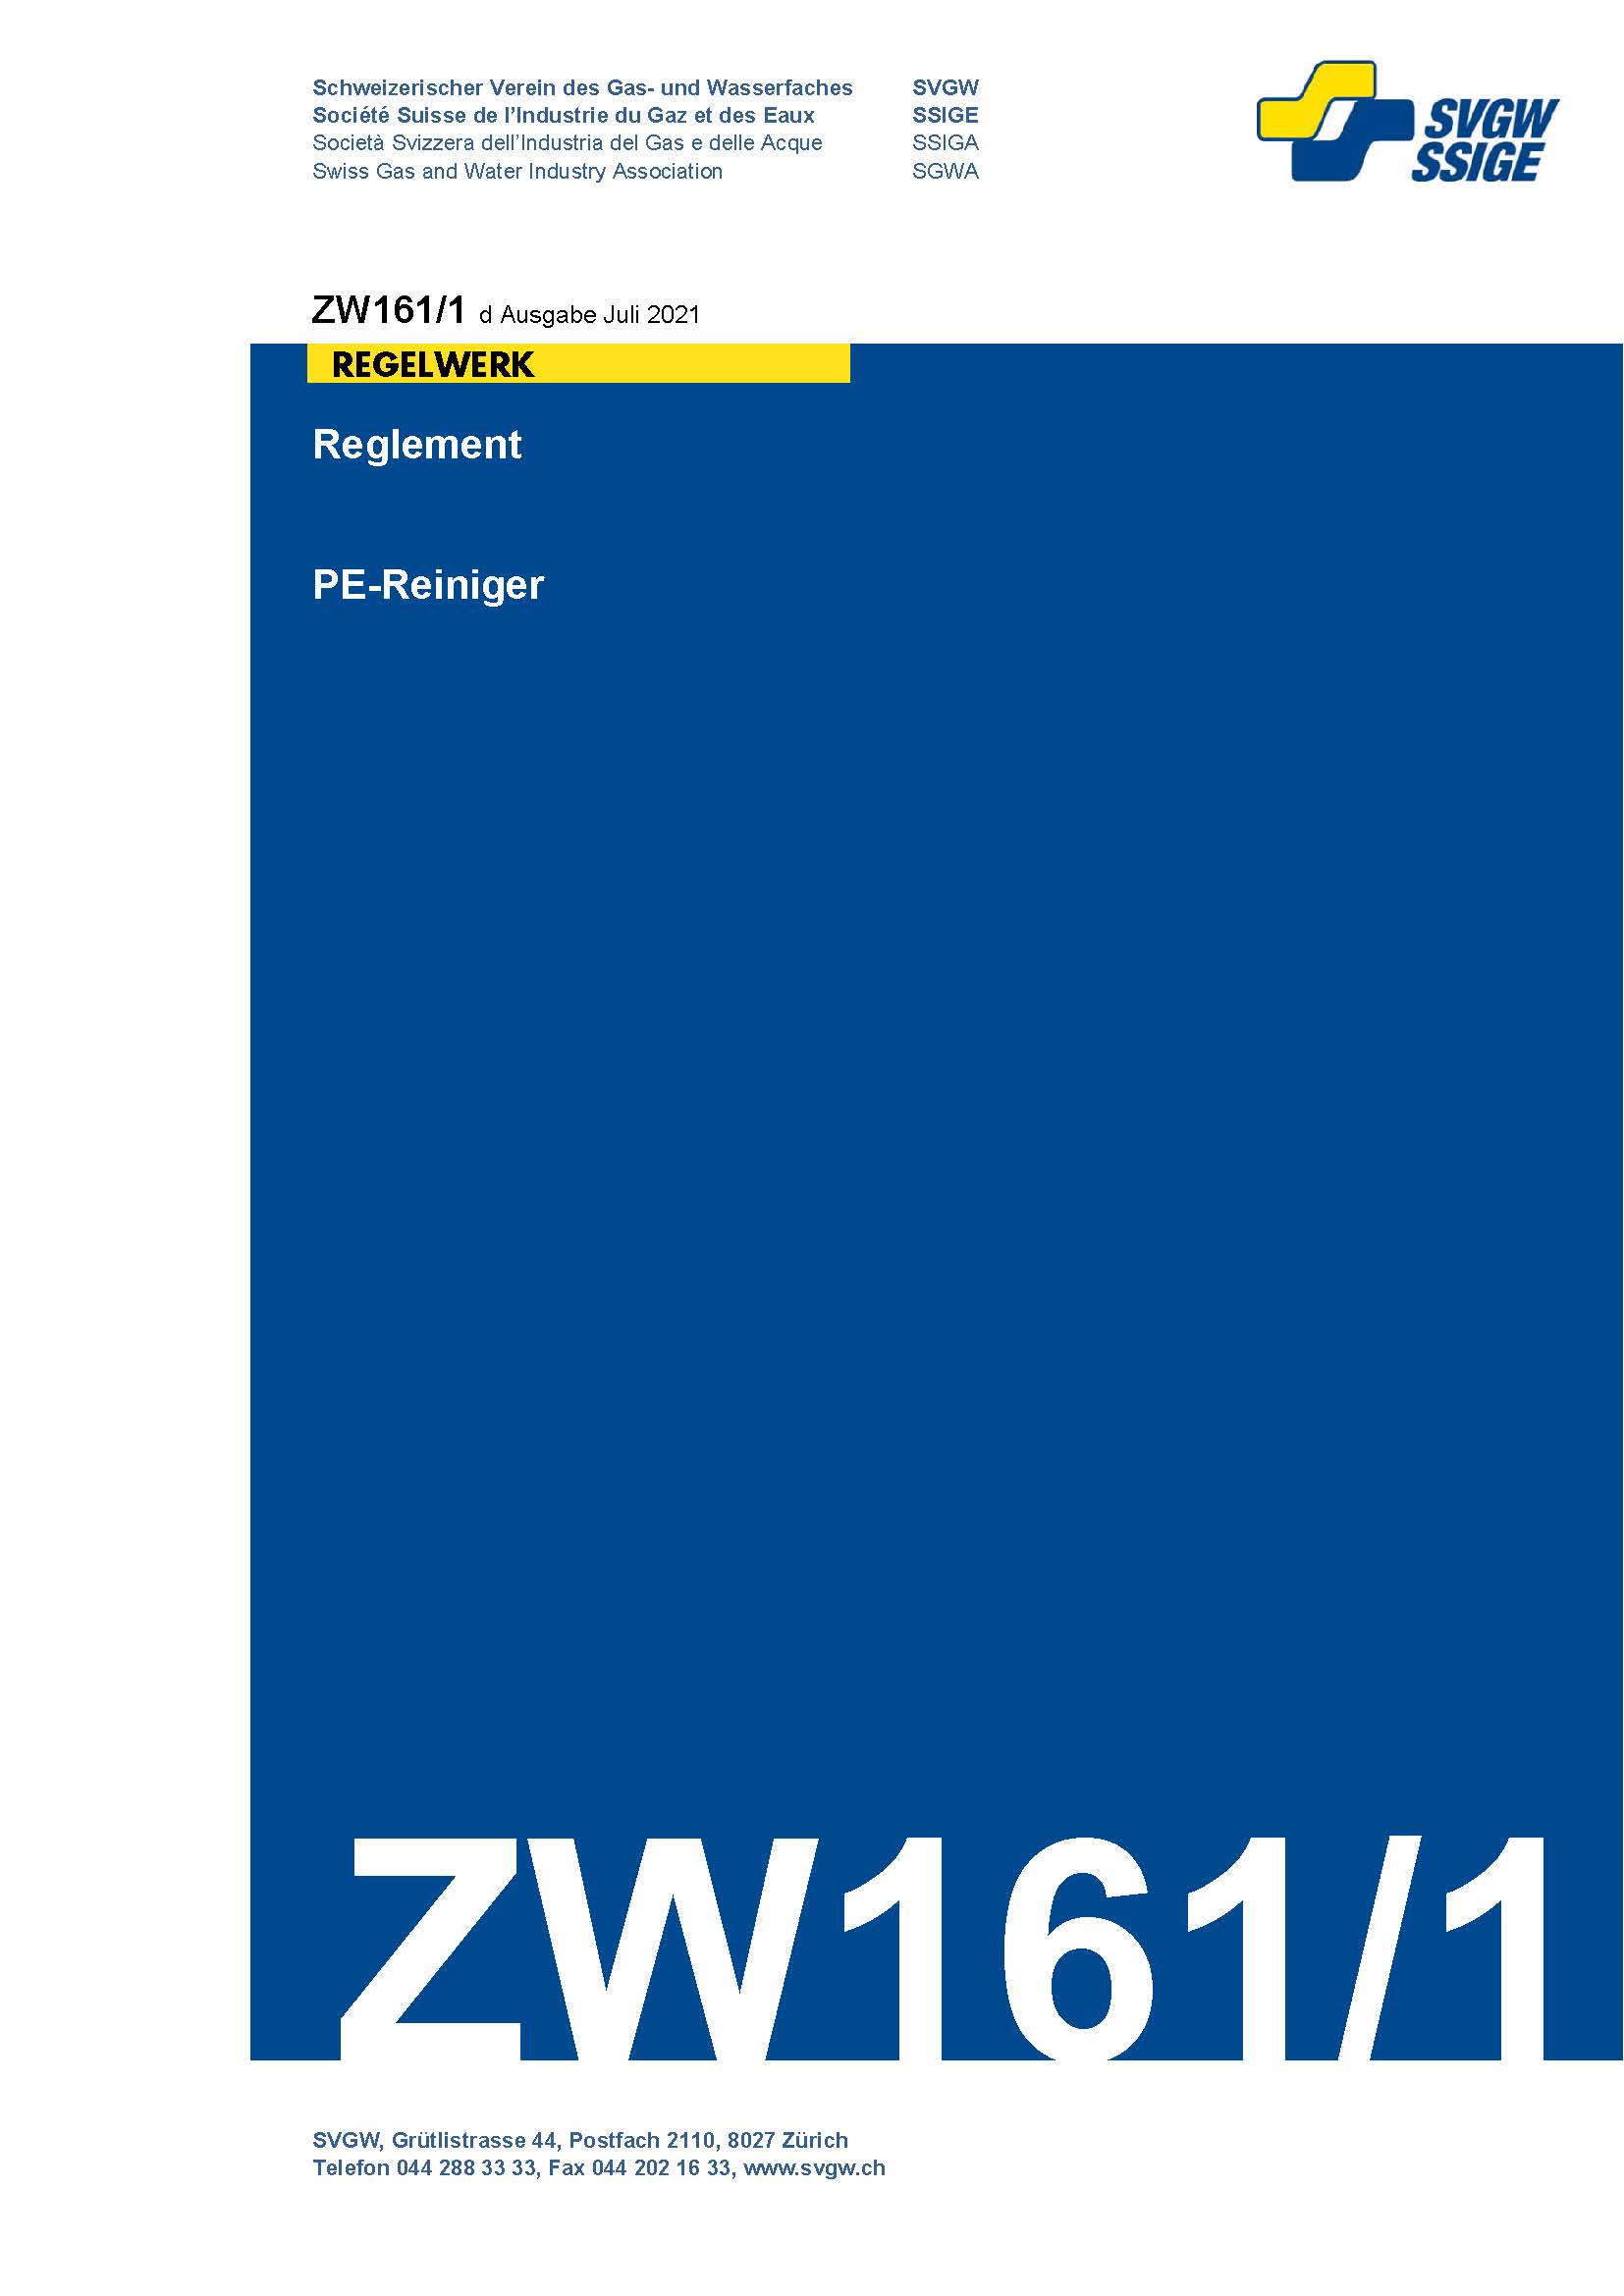 ZW161/1 d - Reglement; PE-Reiniger